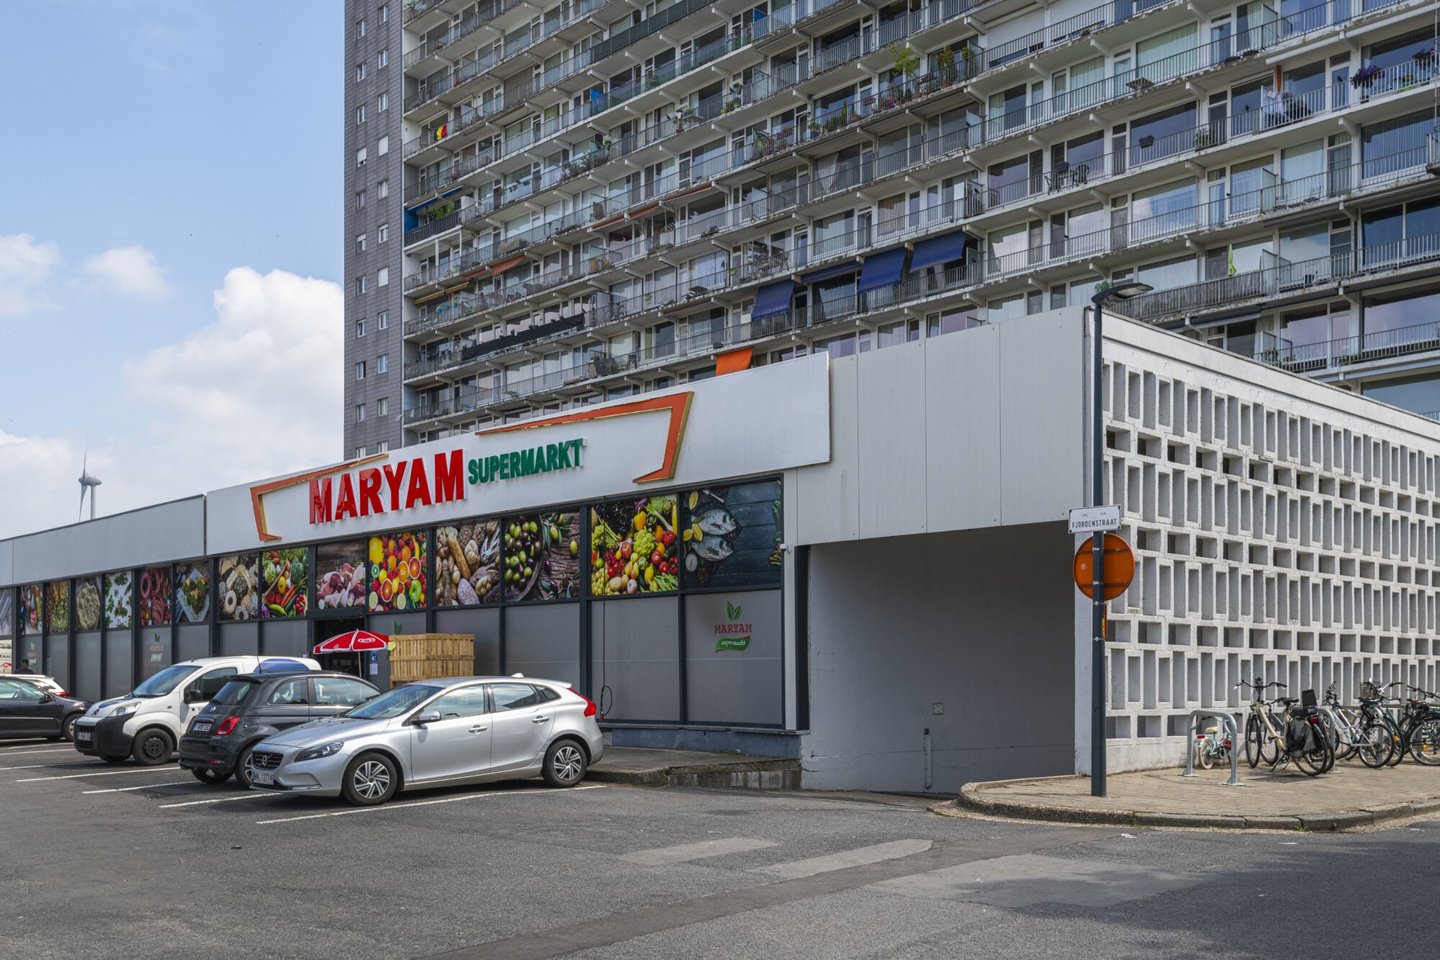 Maryam Supermarket in Gent